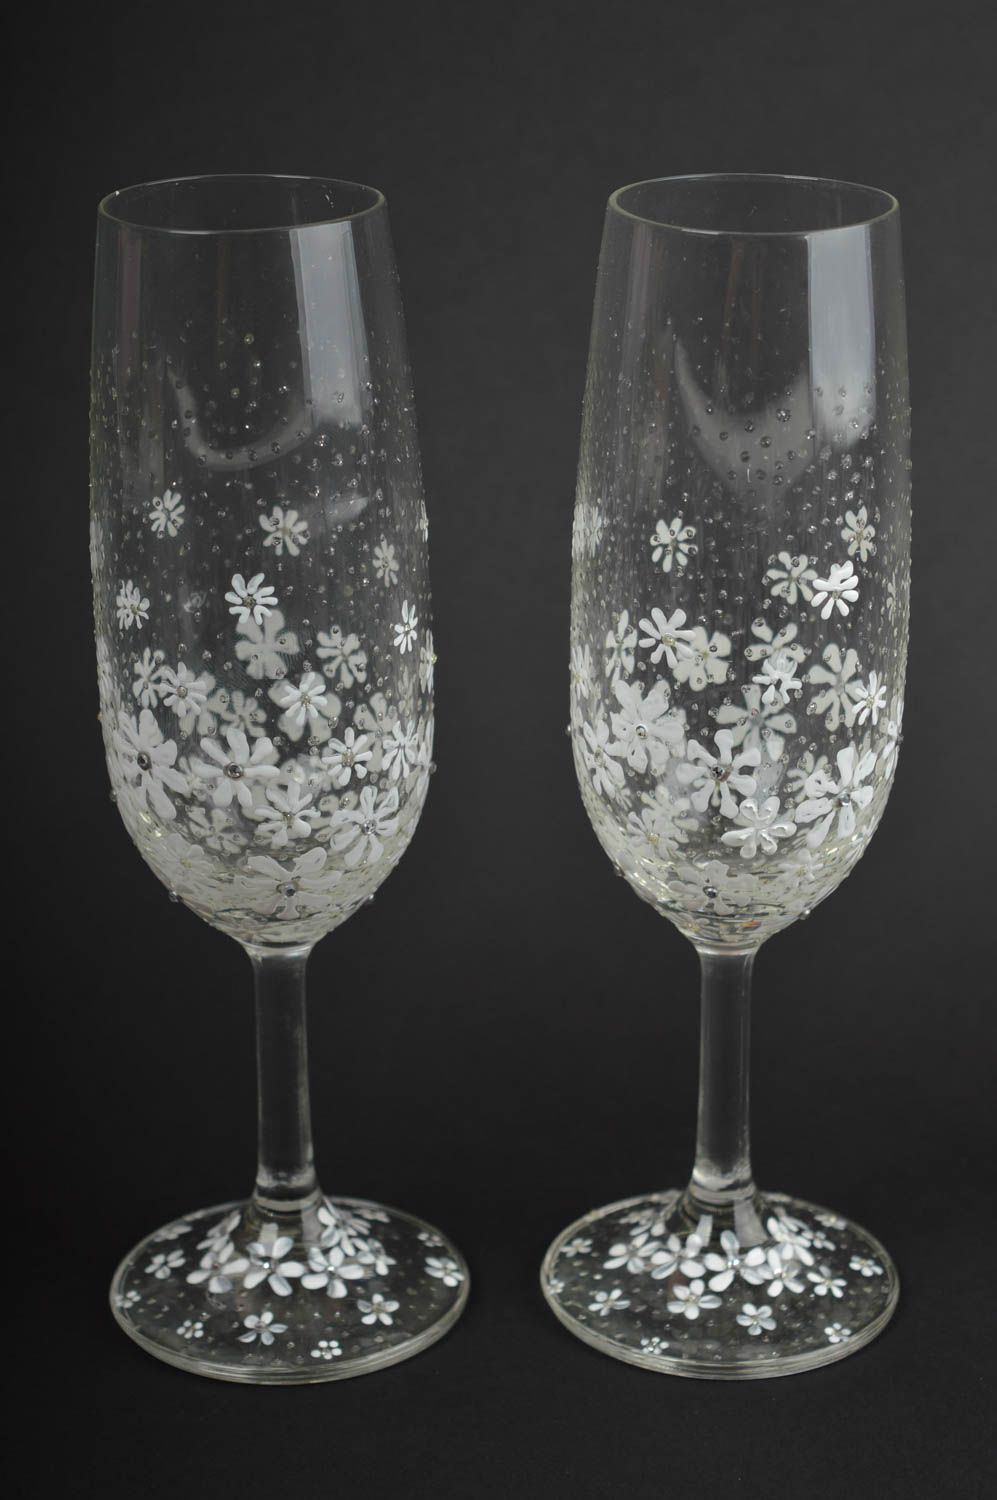 Handmade glasses designer glasses for wedding gift ideas wedding decor photo 2